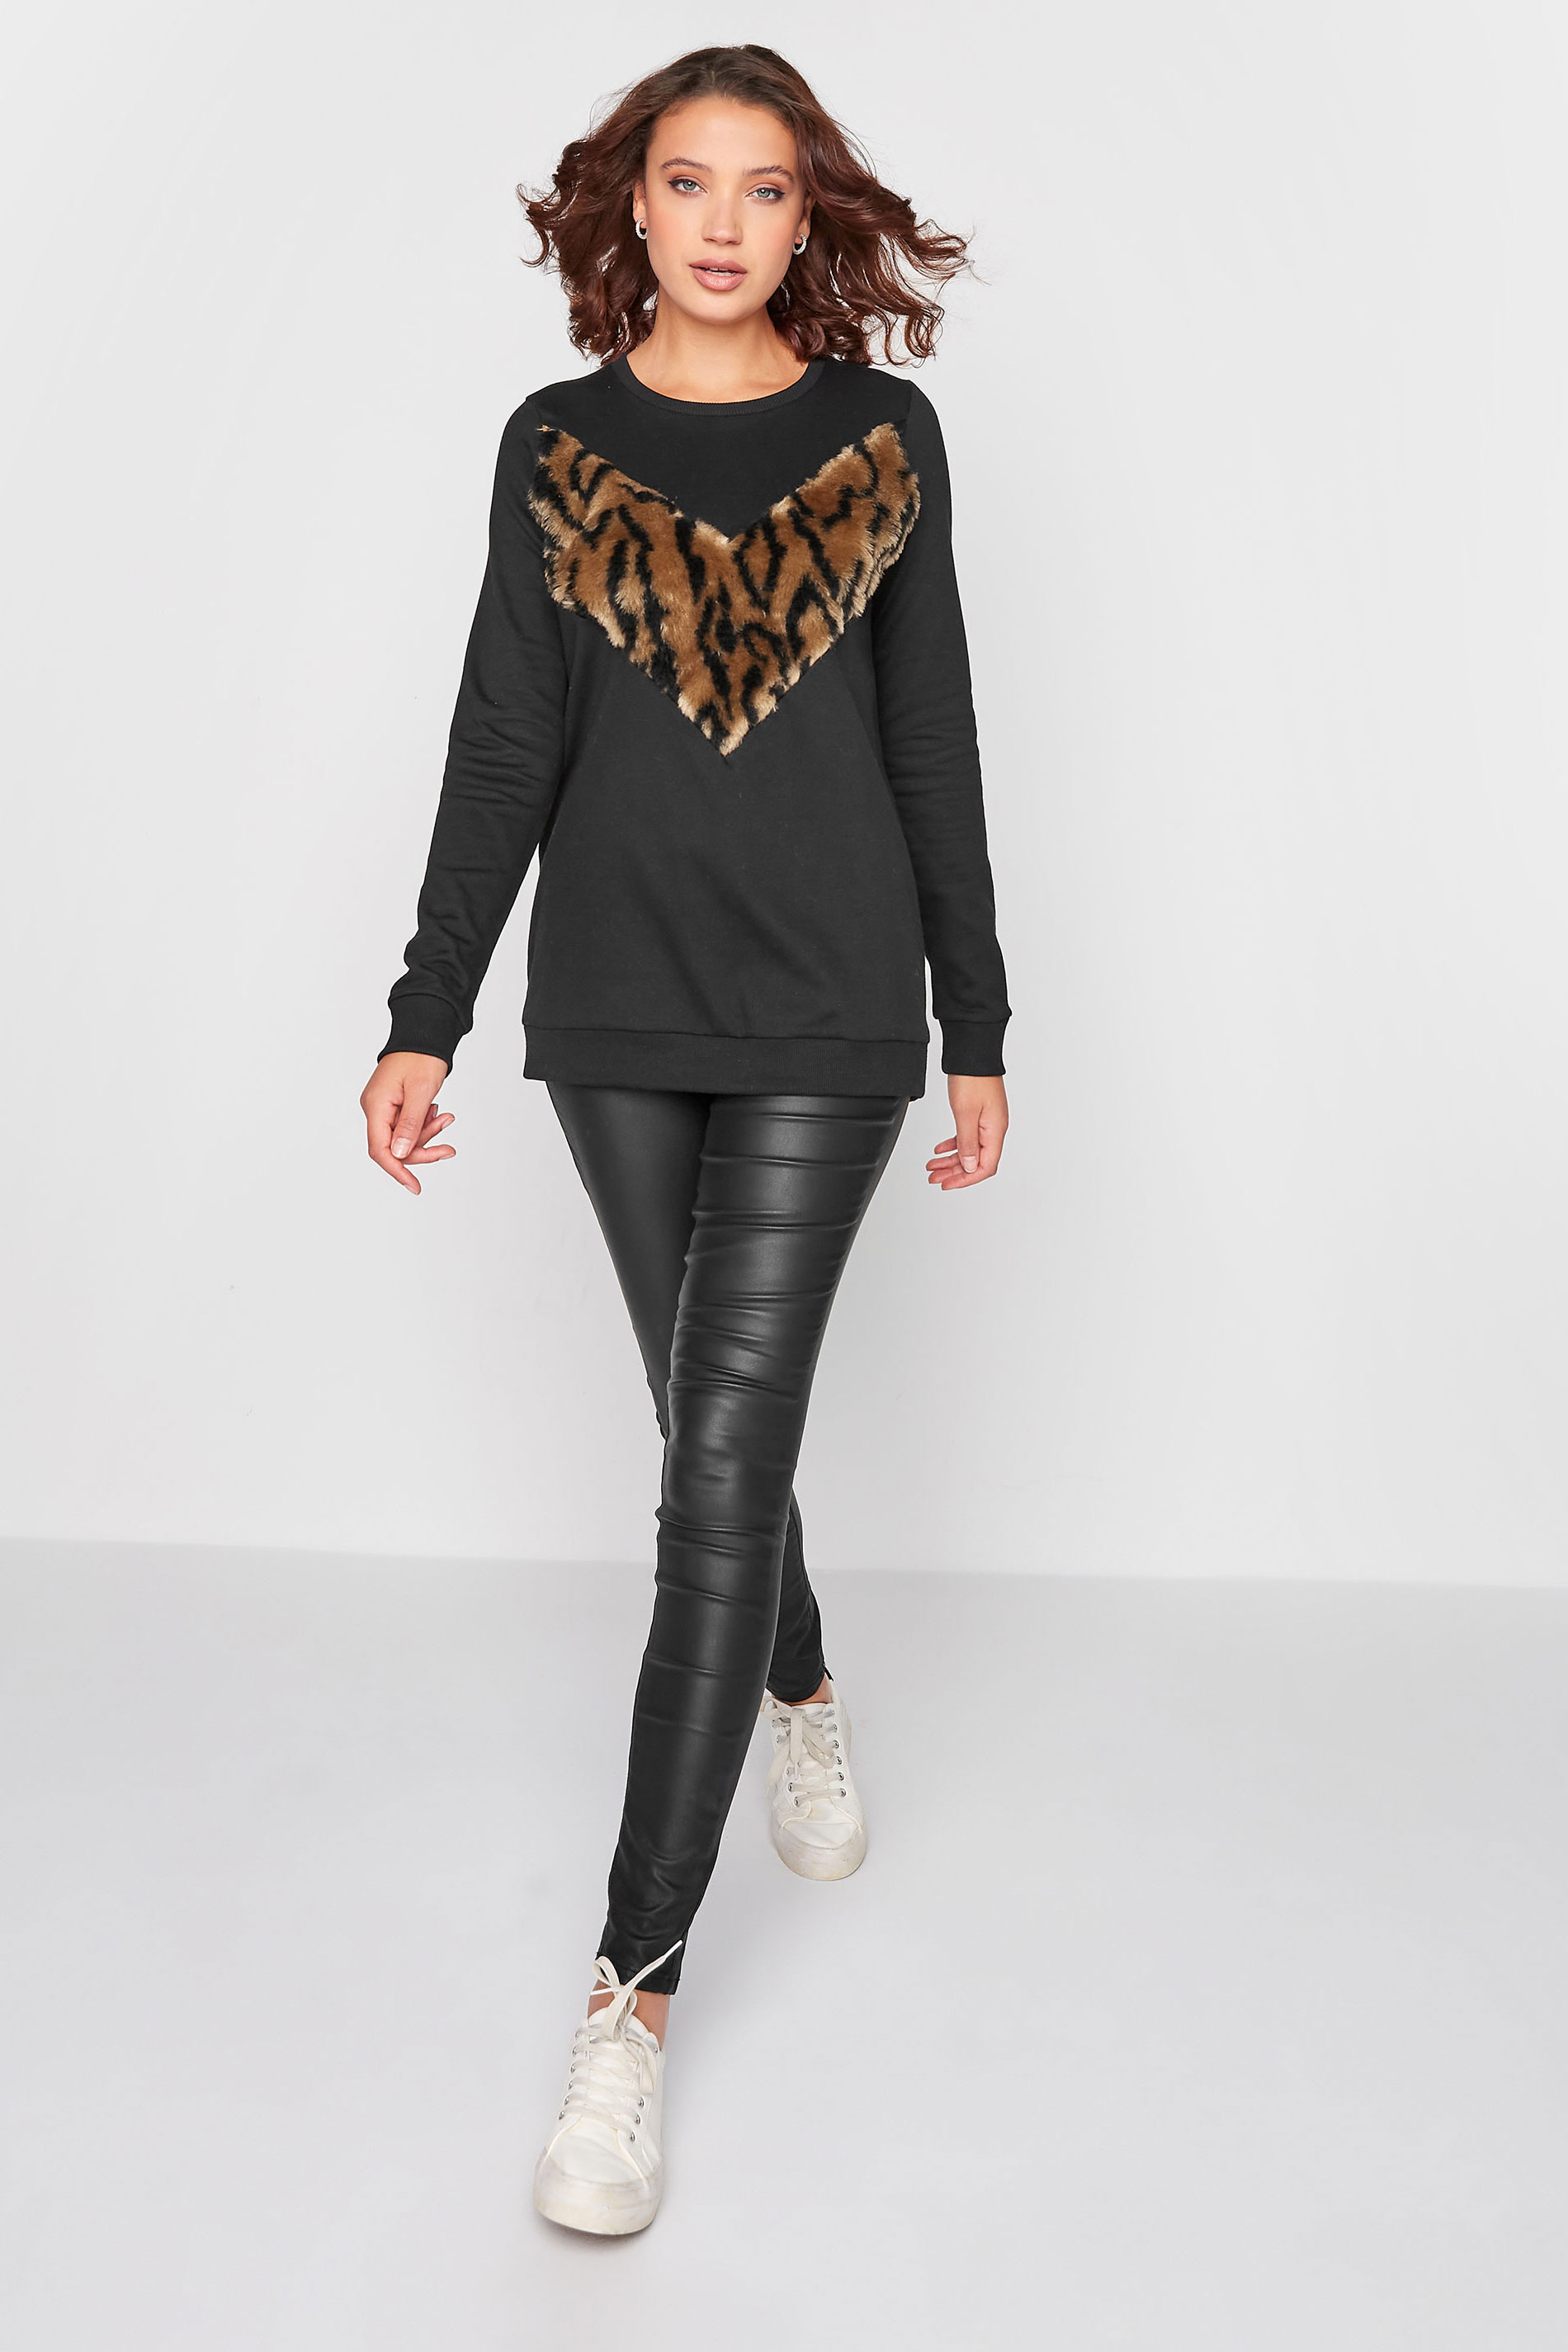 LTS Tall Women's Black Leopard Print Panel Sweatshirt | Long Tall Sally 2